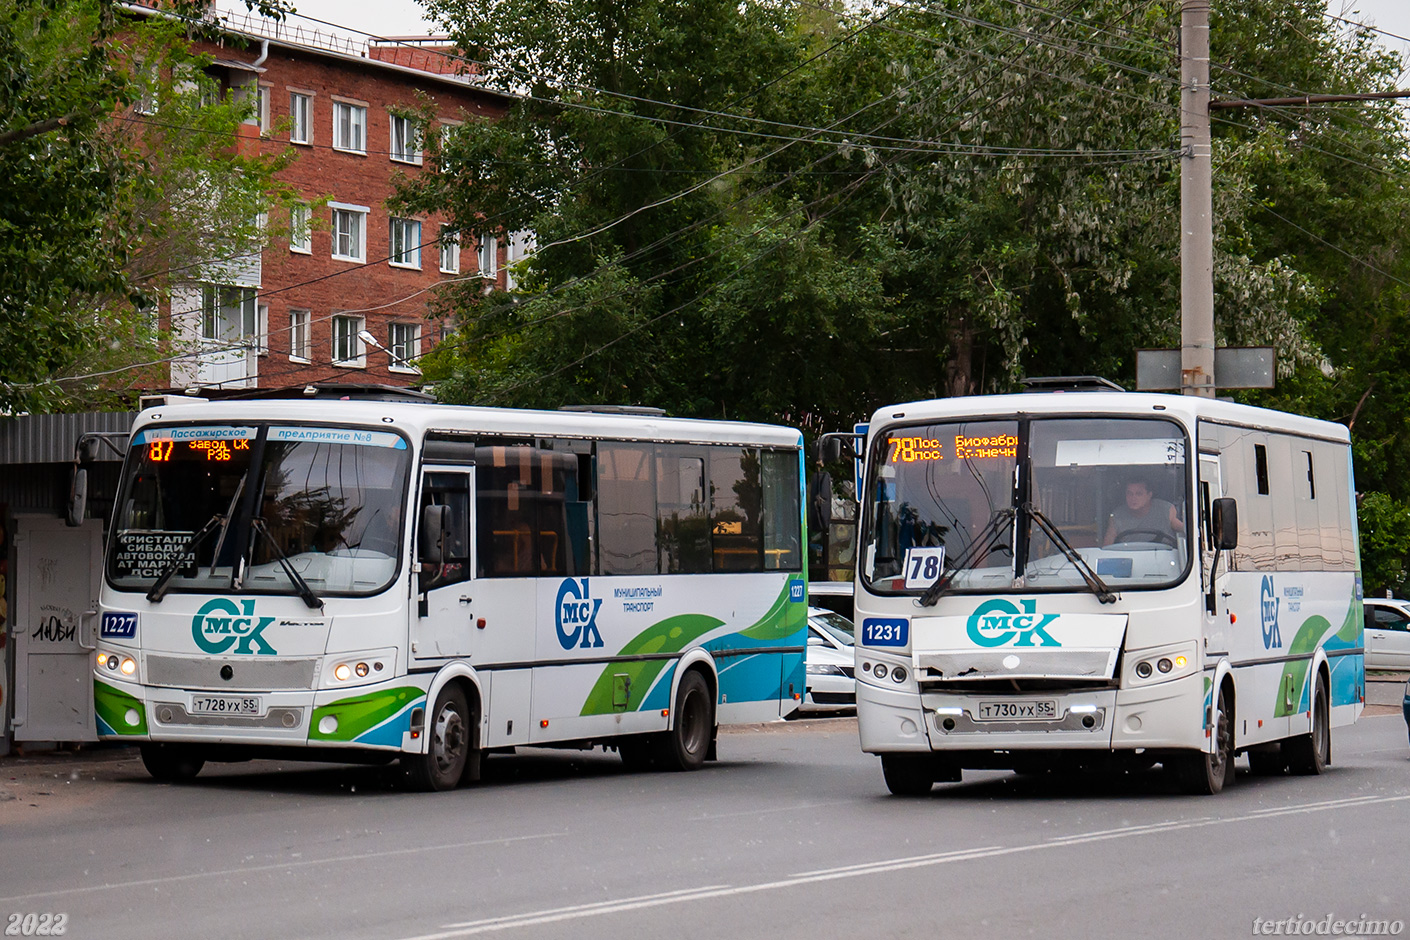 Omsk region, PAZ-320414-04 "Vektor" (1-2) č. 1227; Omsk region, PAZ-320414-04 "Vektor" (1-2) č. 1231